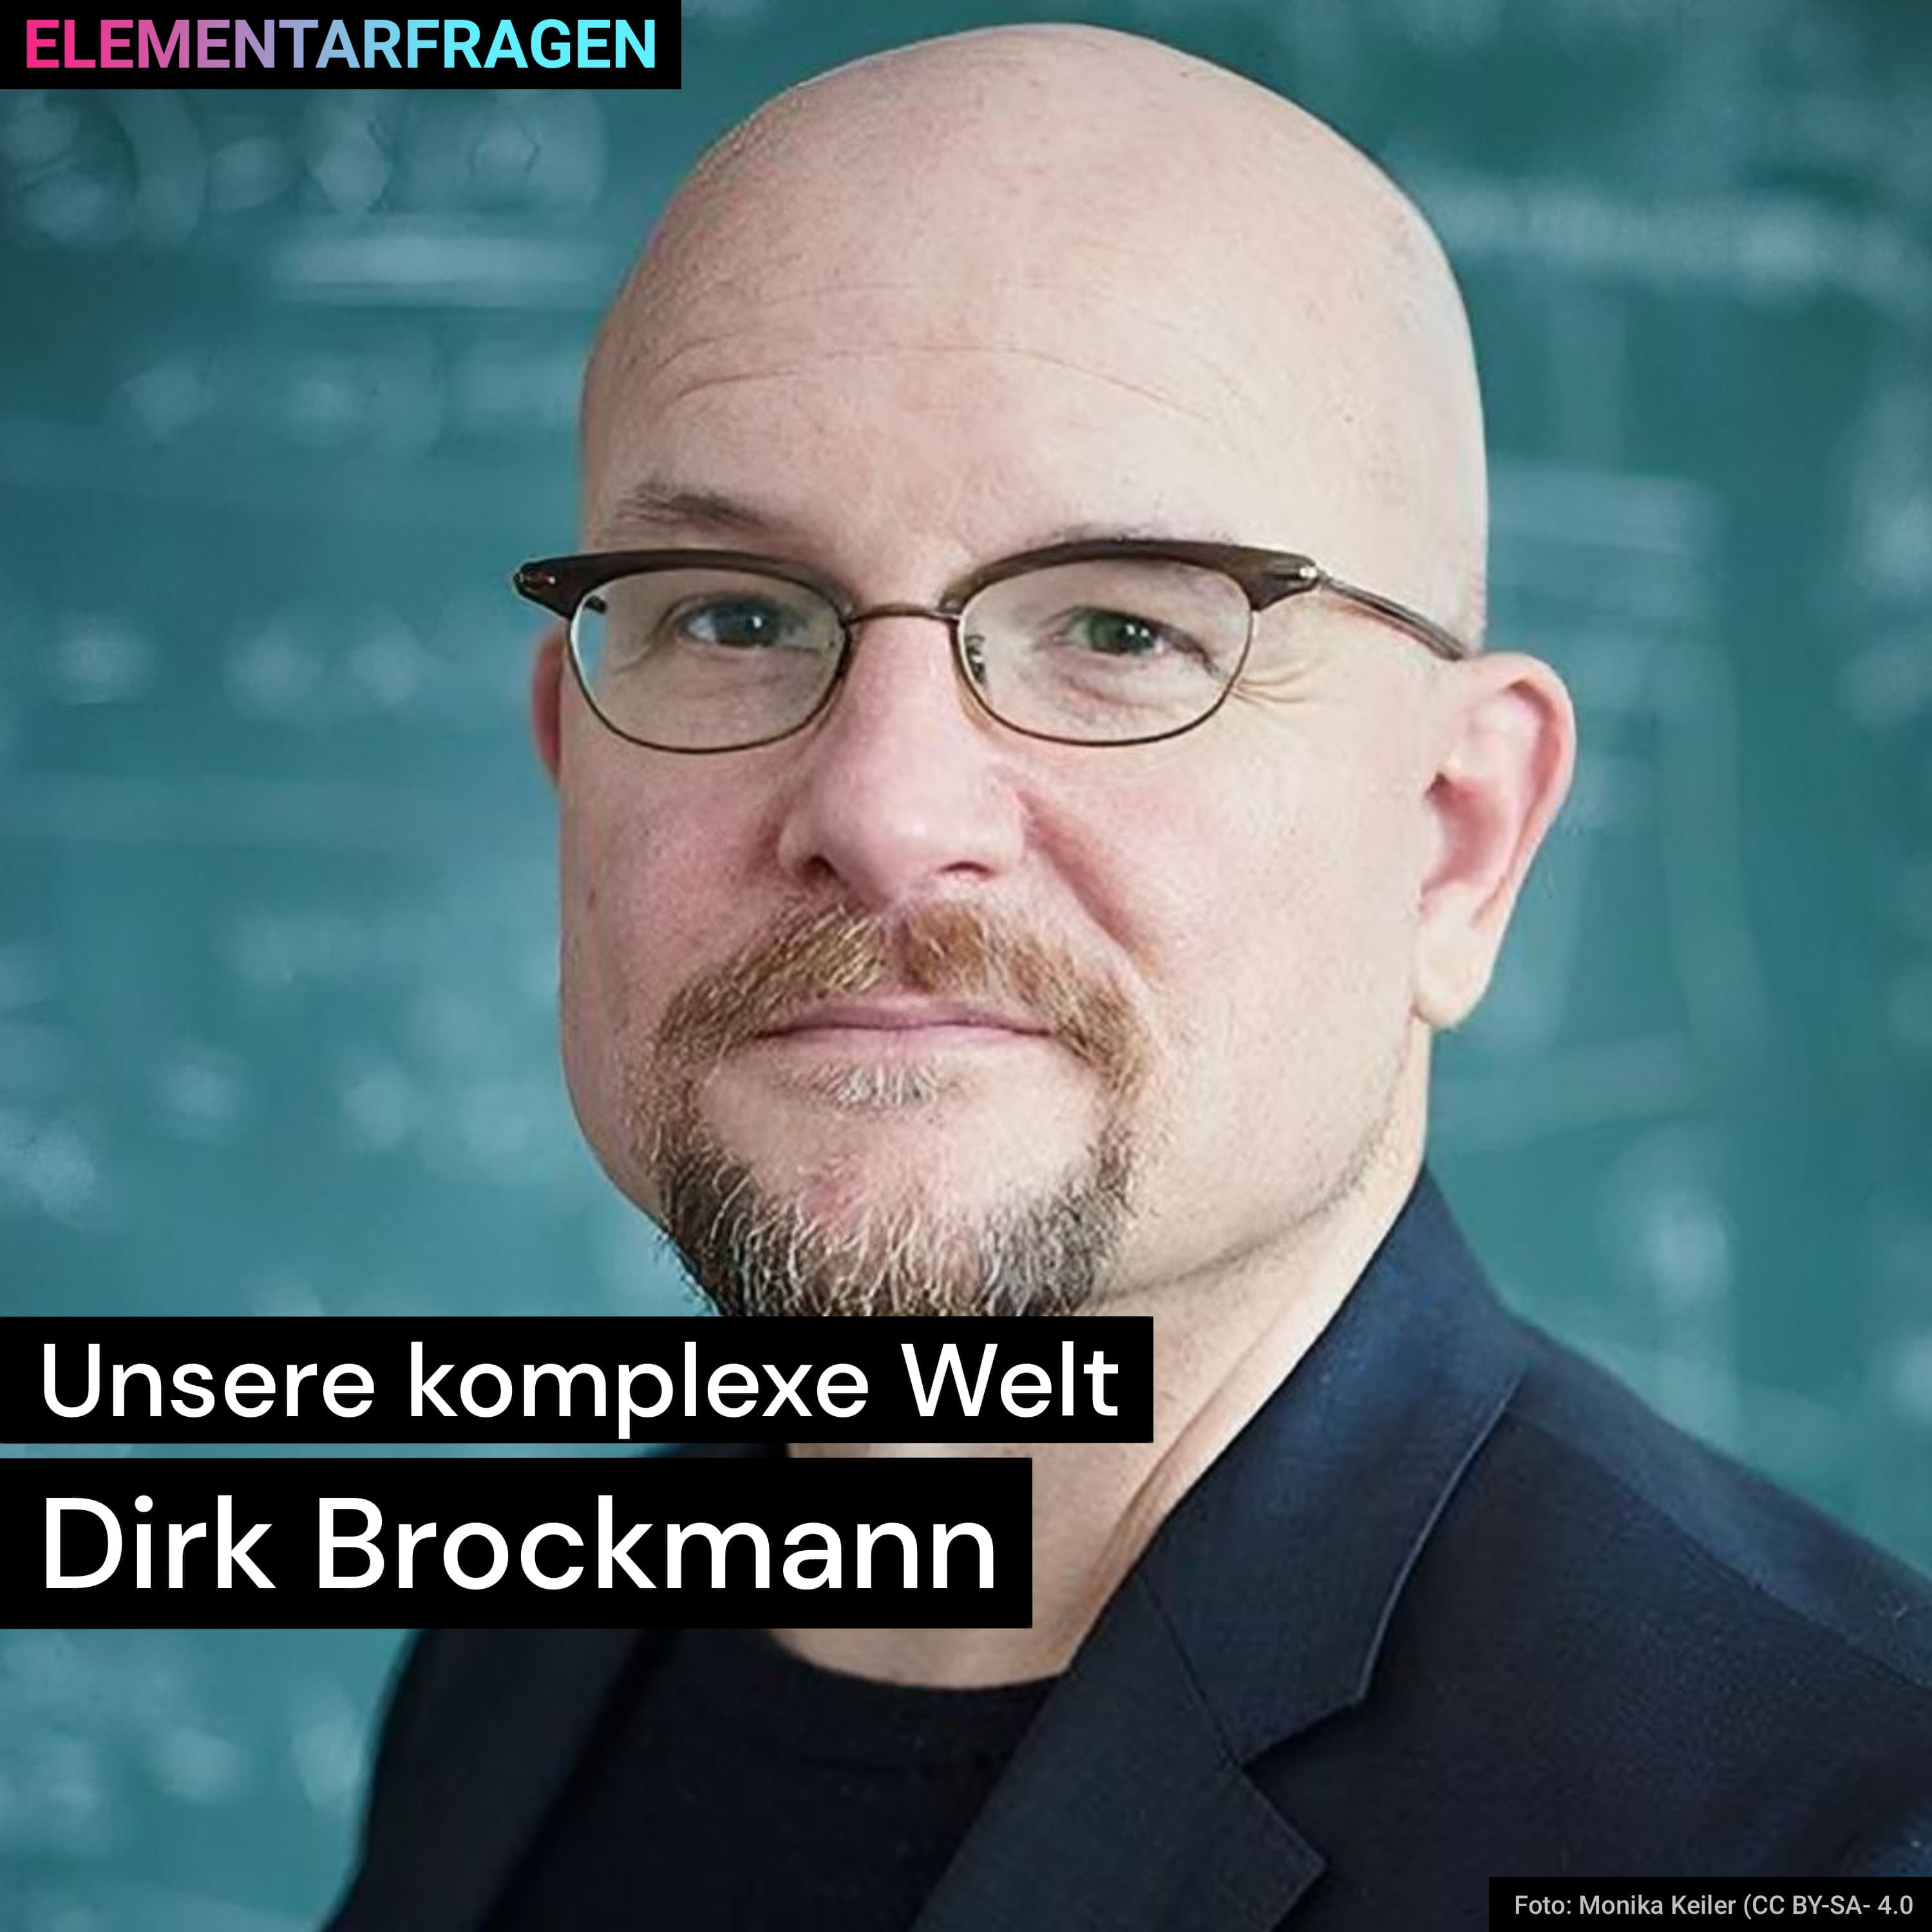 Unsere komplexe Welt: Dirk Brockmann | Elementarfragen